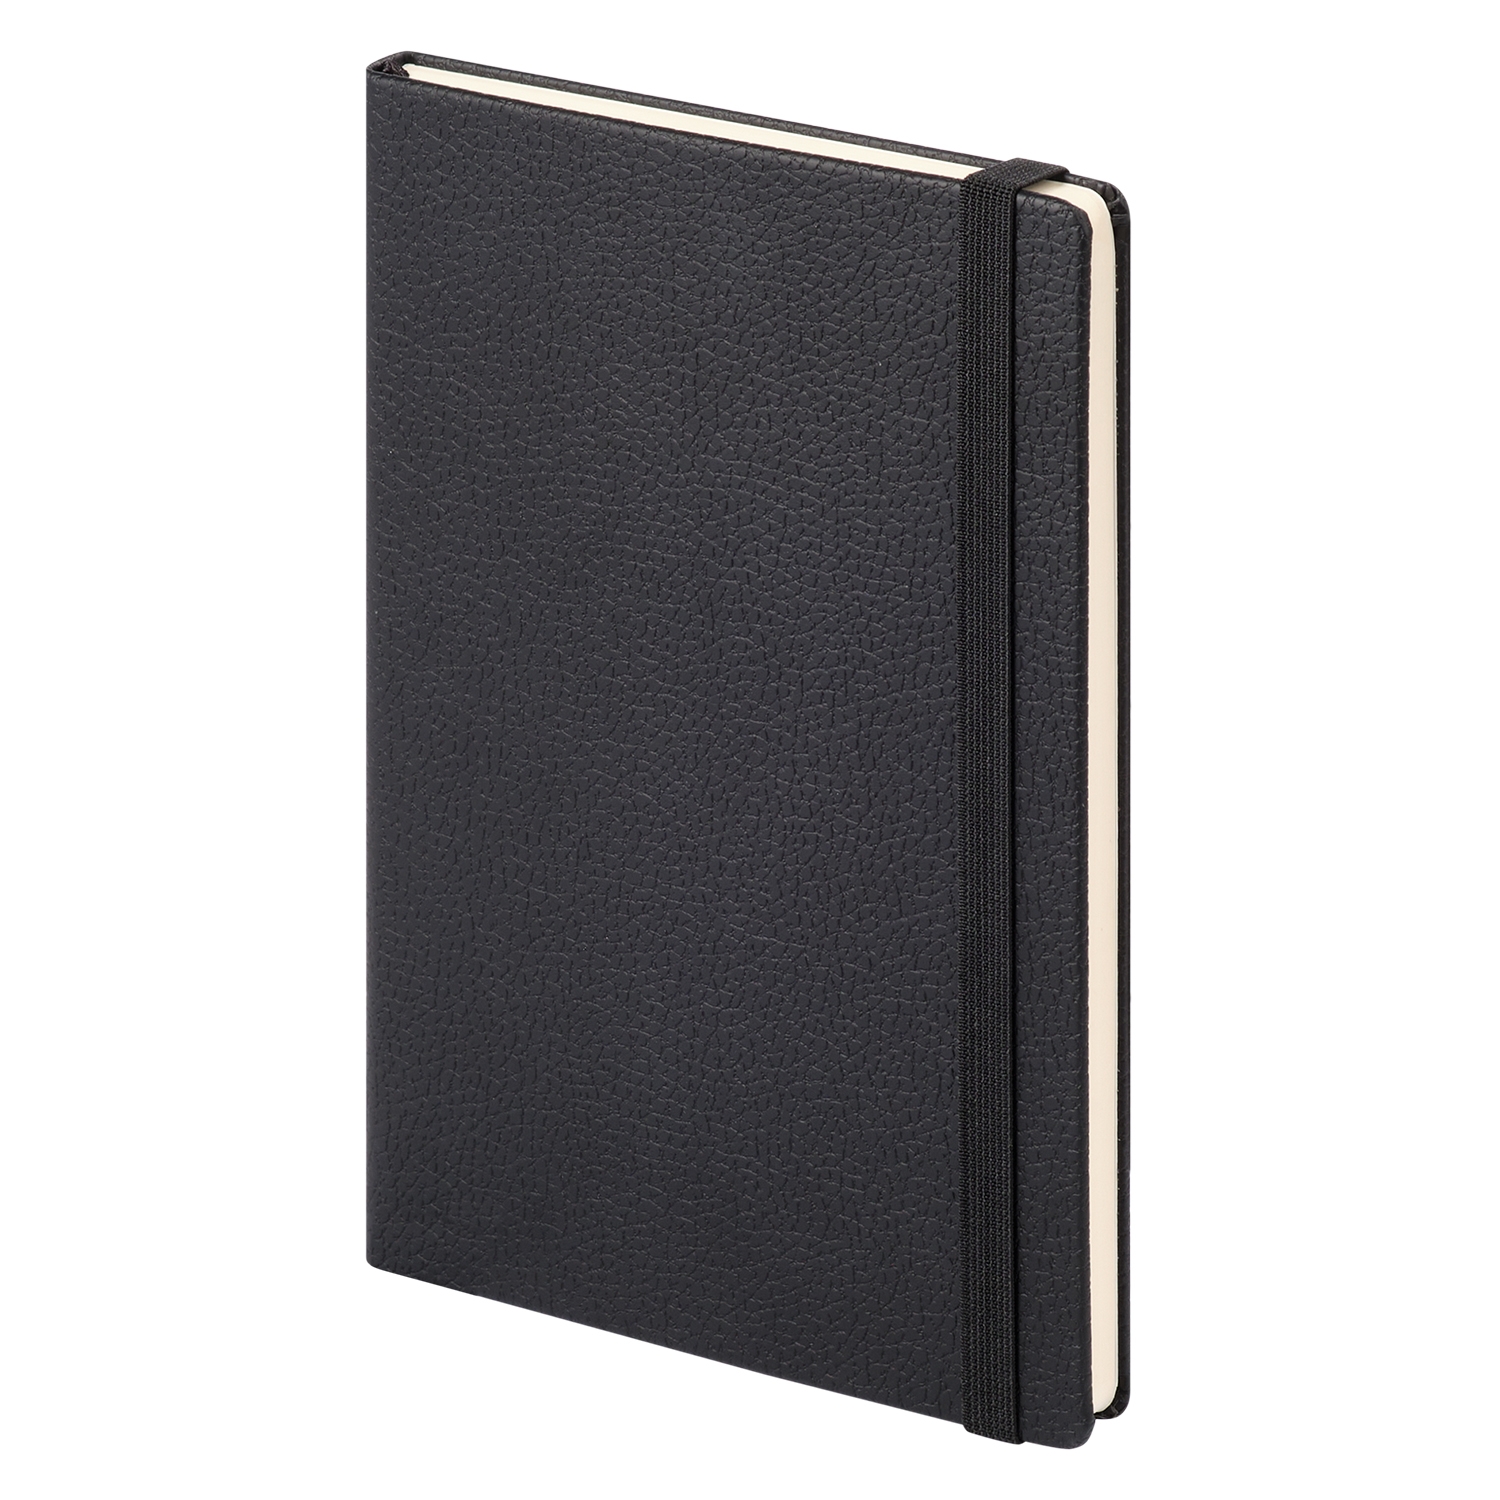 Ежедневник Dallas Btobook недатированный, черный (без упаковки, без стикера), черный